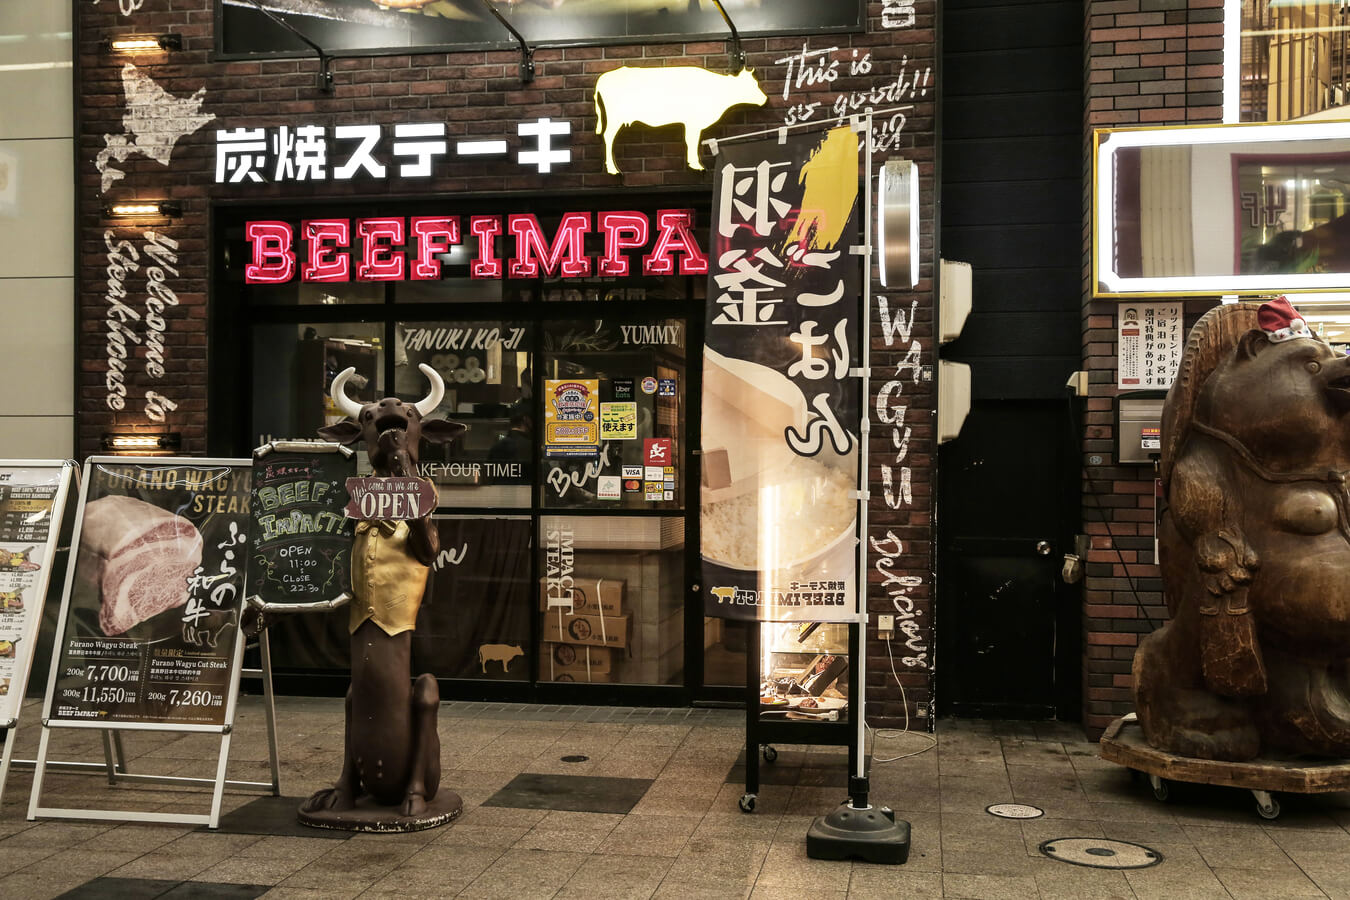 ย่านทะนุกิโคจิ(Tanukikoji Shopping Street)